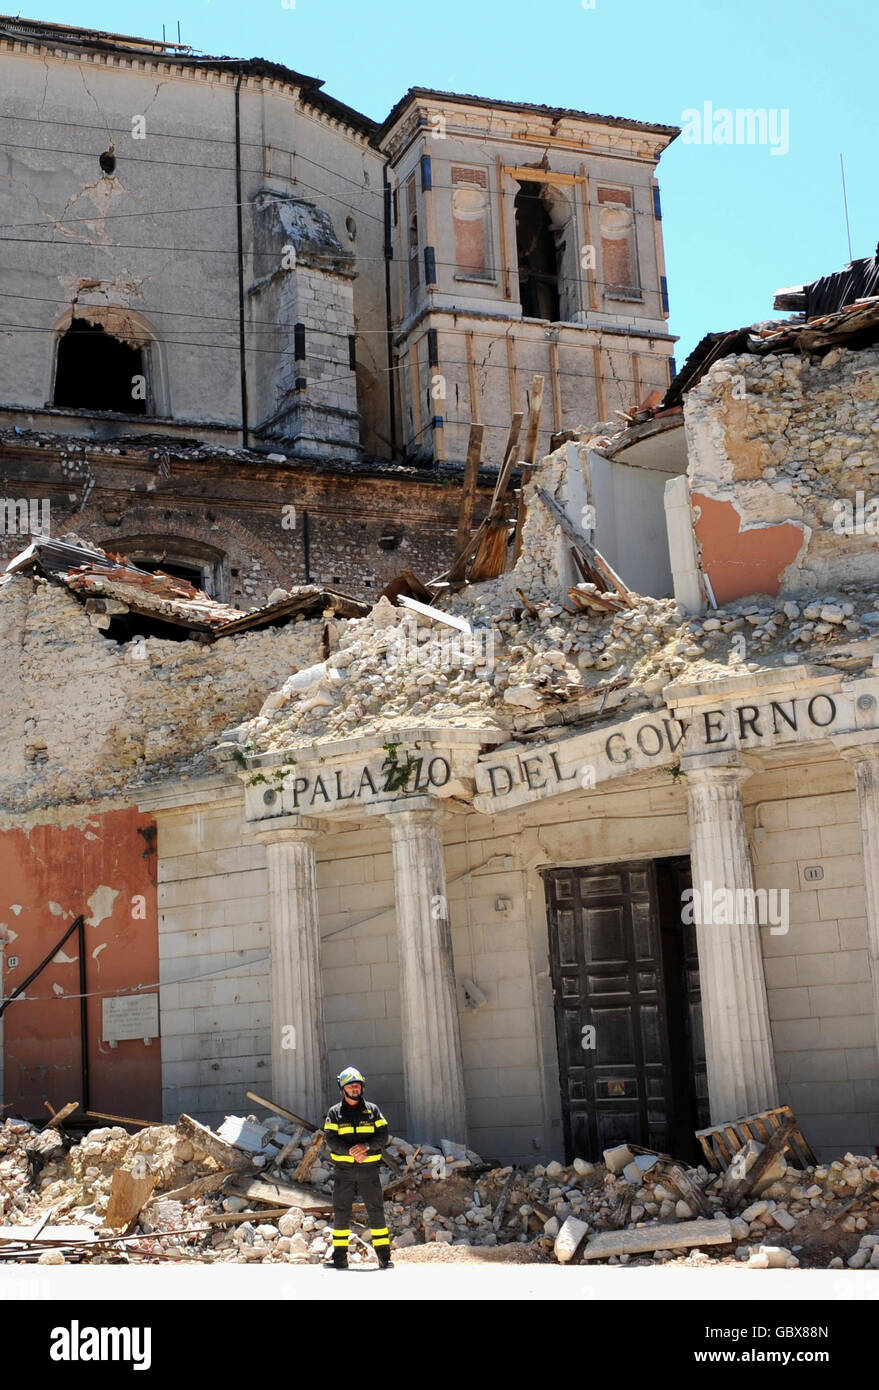 Alcuni dei danni sismici causati alla città di l'Aquila, visti durante una visita della moglie del primo ministro Gordon Brown, Sarah, durante il Vertice G8 in Italia. Foto Stock